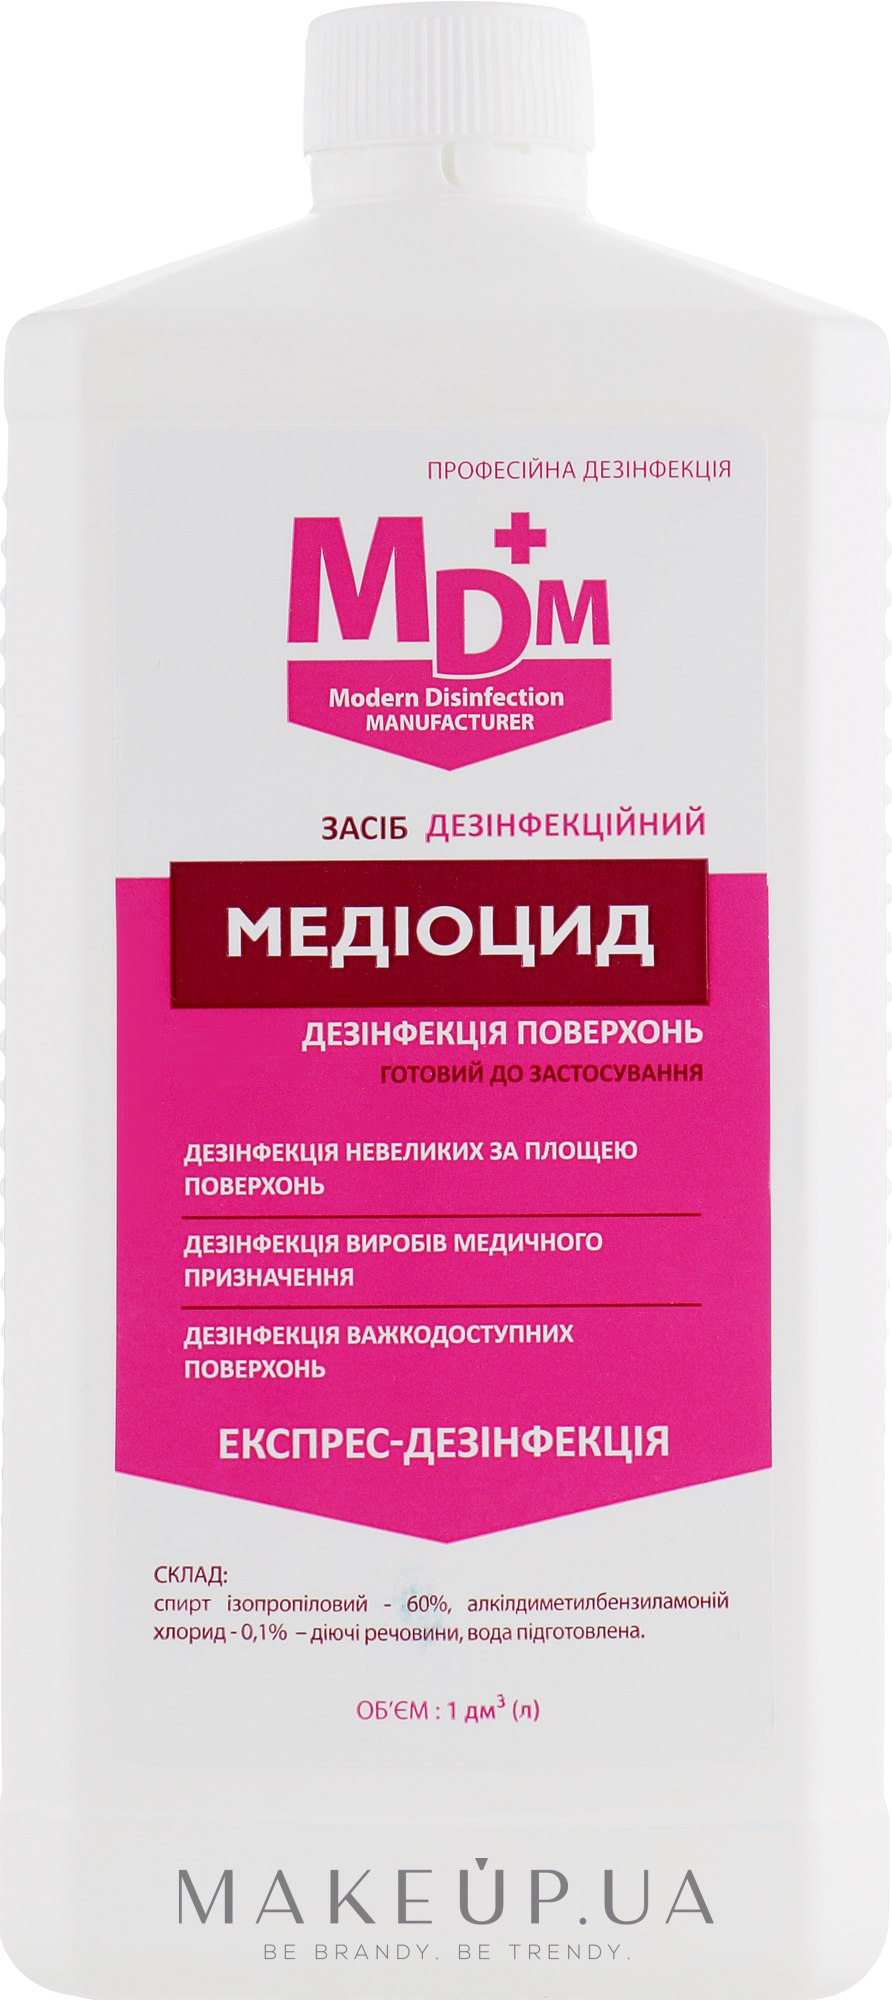 Медиоцид средство для обеззараживания поверхностей - MDM — фото 1000ml